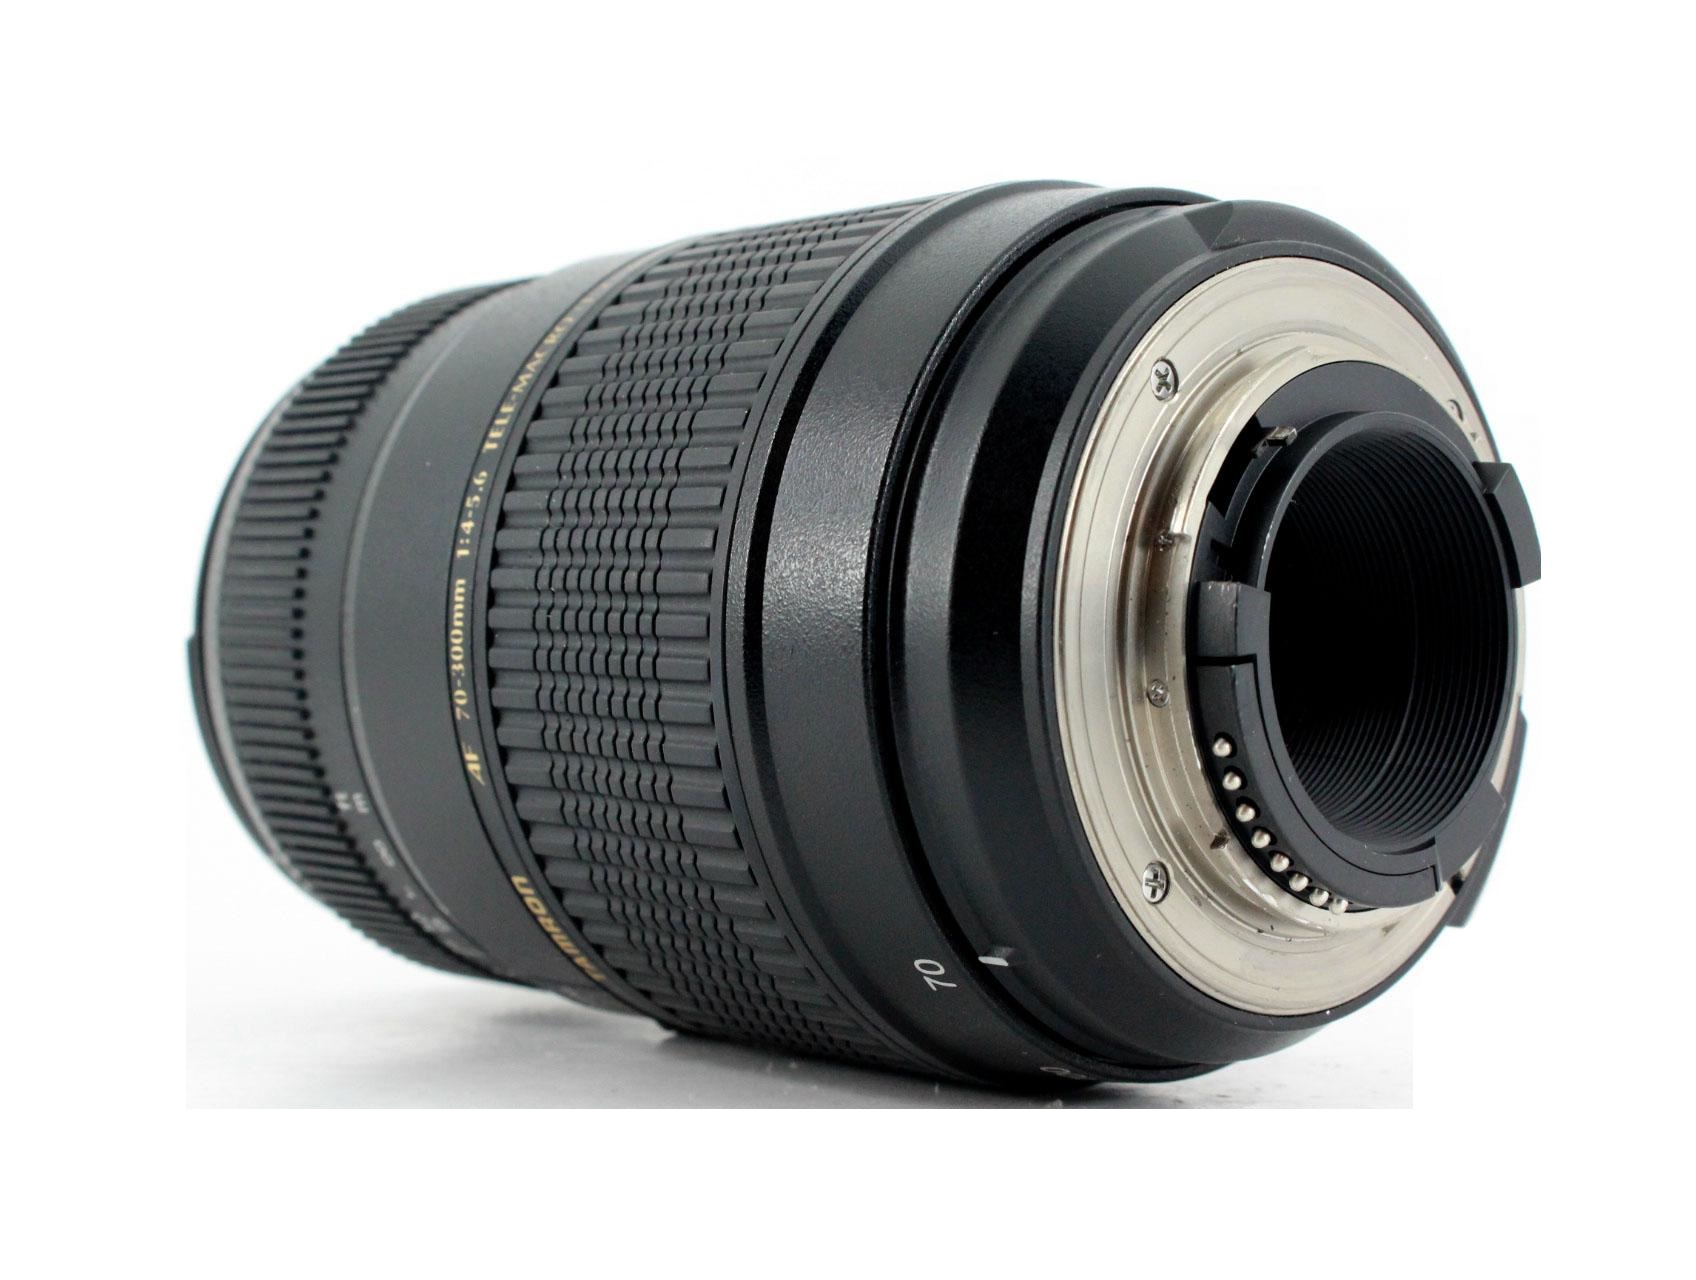 Tamron AF 70-300mm F/4-5.6 Di LD Macro 1:2 Lens for Nikon - Lenses and